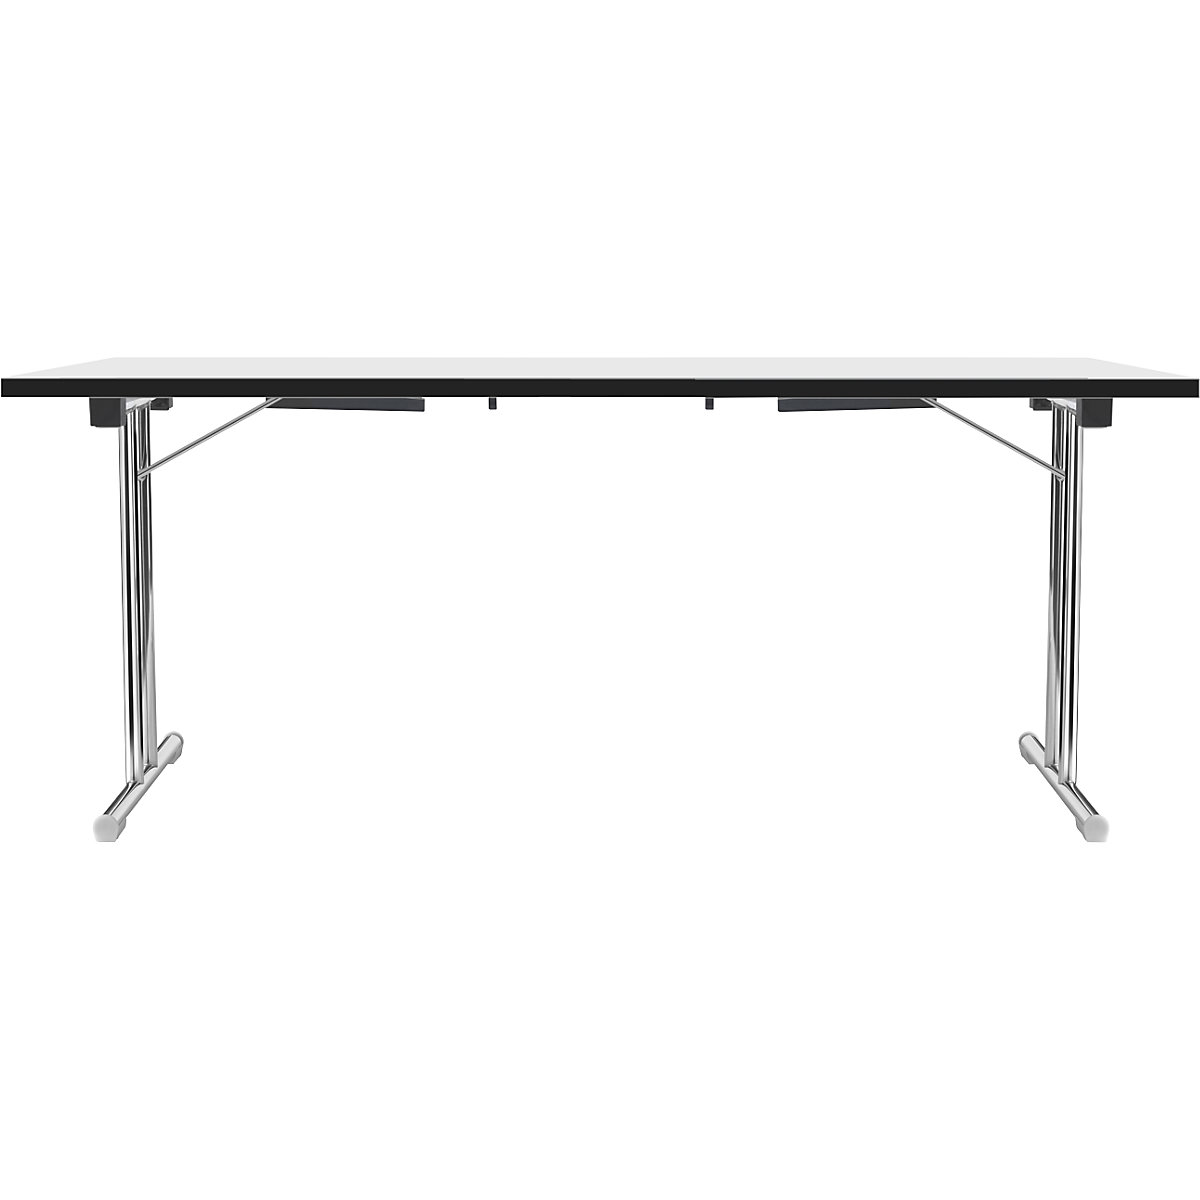 Inklapbare tafel met dubbel T-vormig onderstel, frame van staalbuis, verchroomd, wit/zwart, b x d = 1800 x 800 mm-12